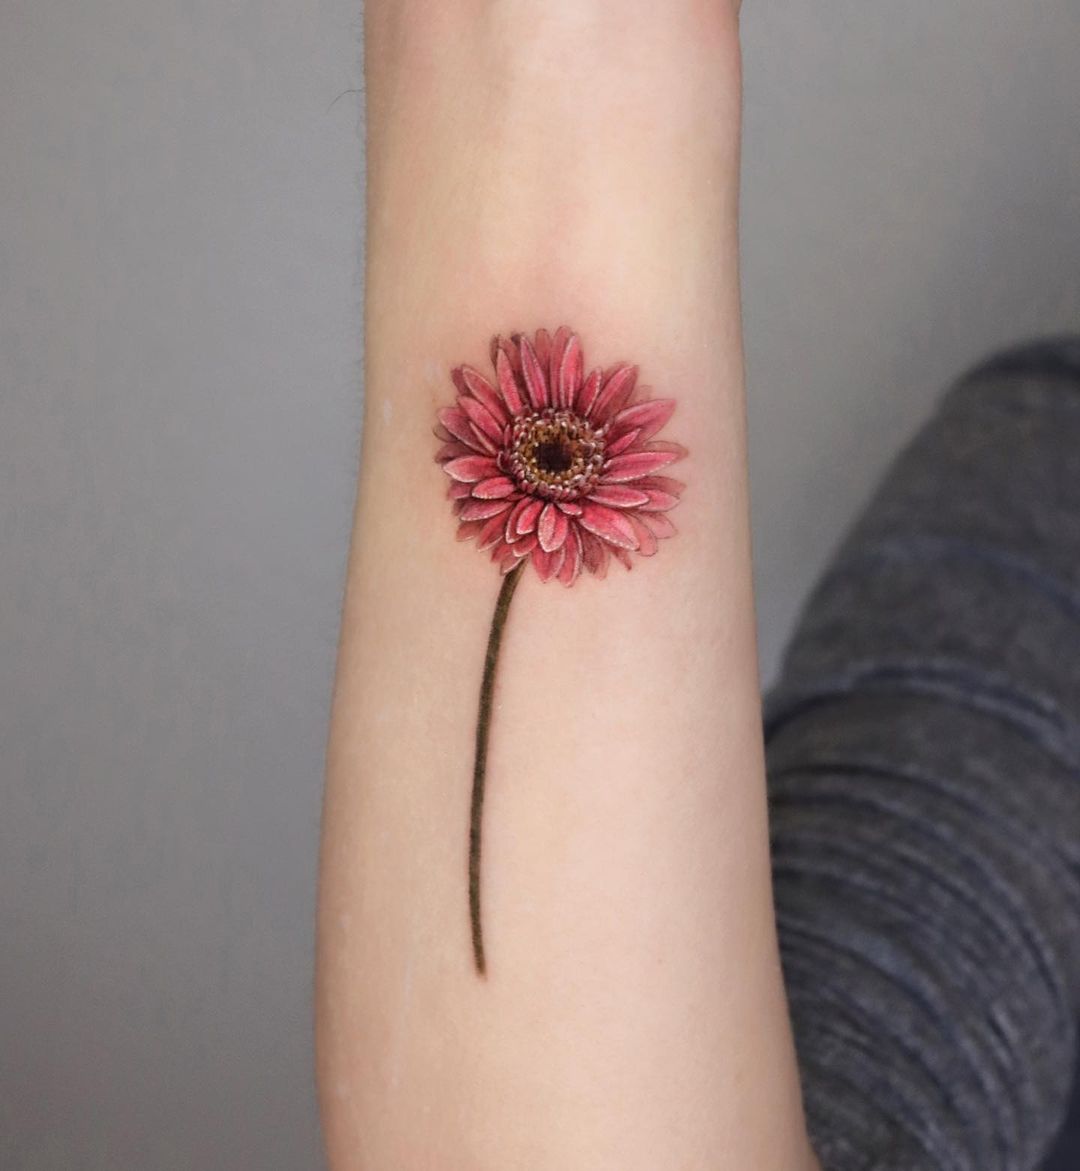 Tatuaje de gerbera daisy